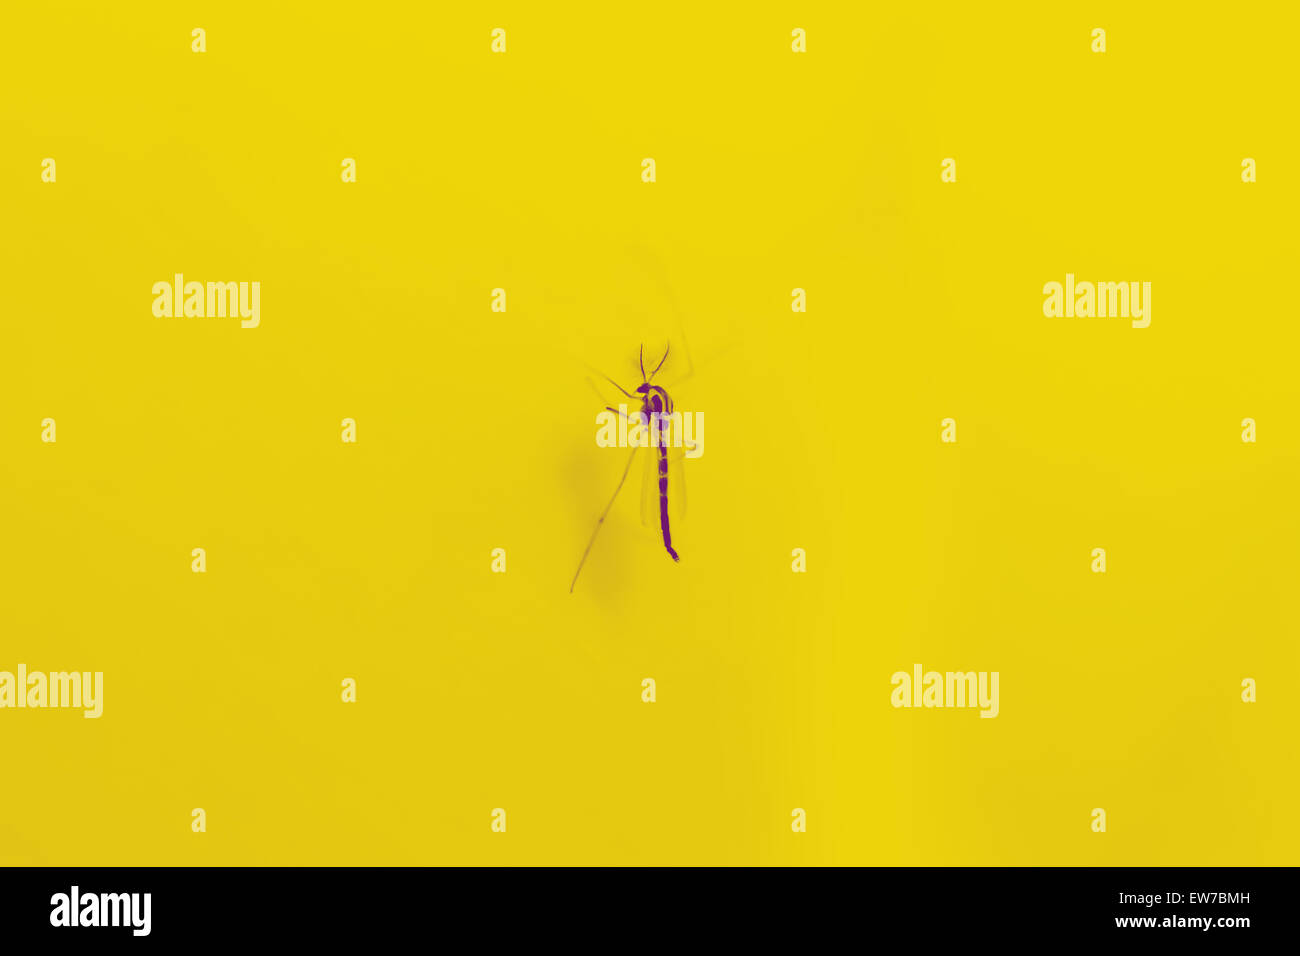 Large mosquito on yellow background like fantasy Stock Photo